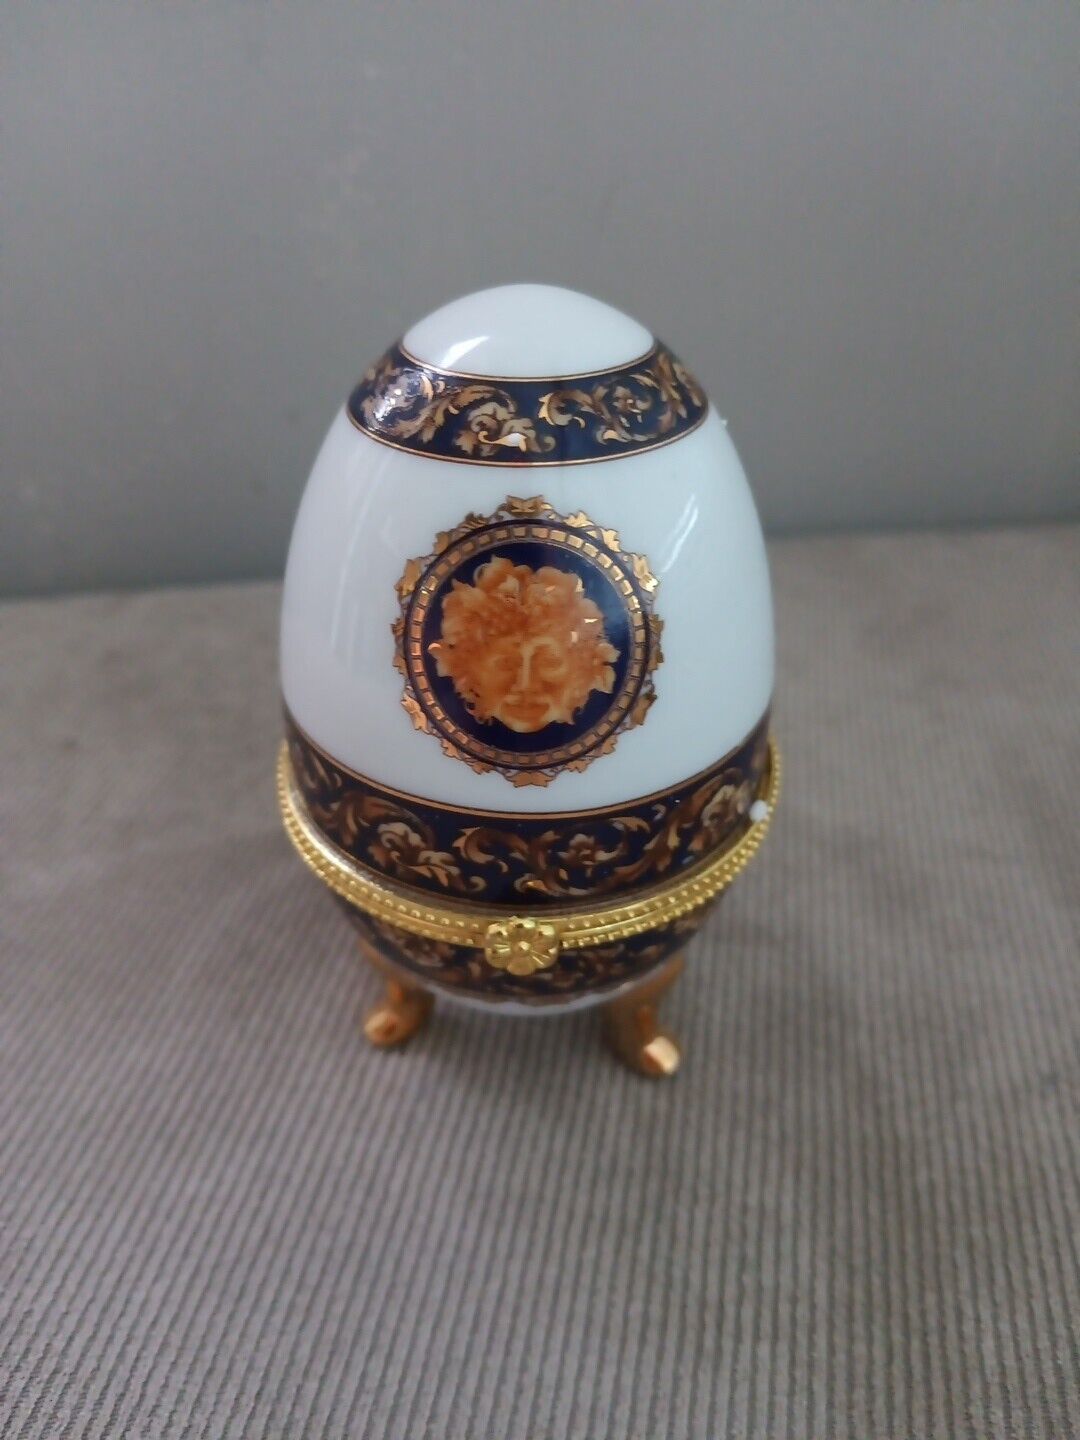 Limoges Porcelain Egg Bacchus Versace Style - Made in France 